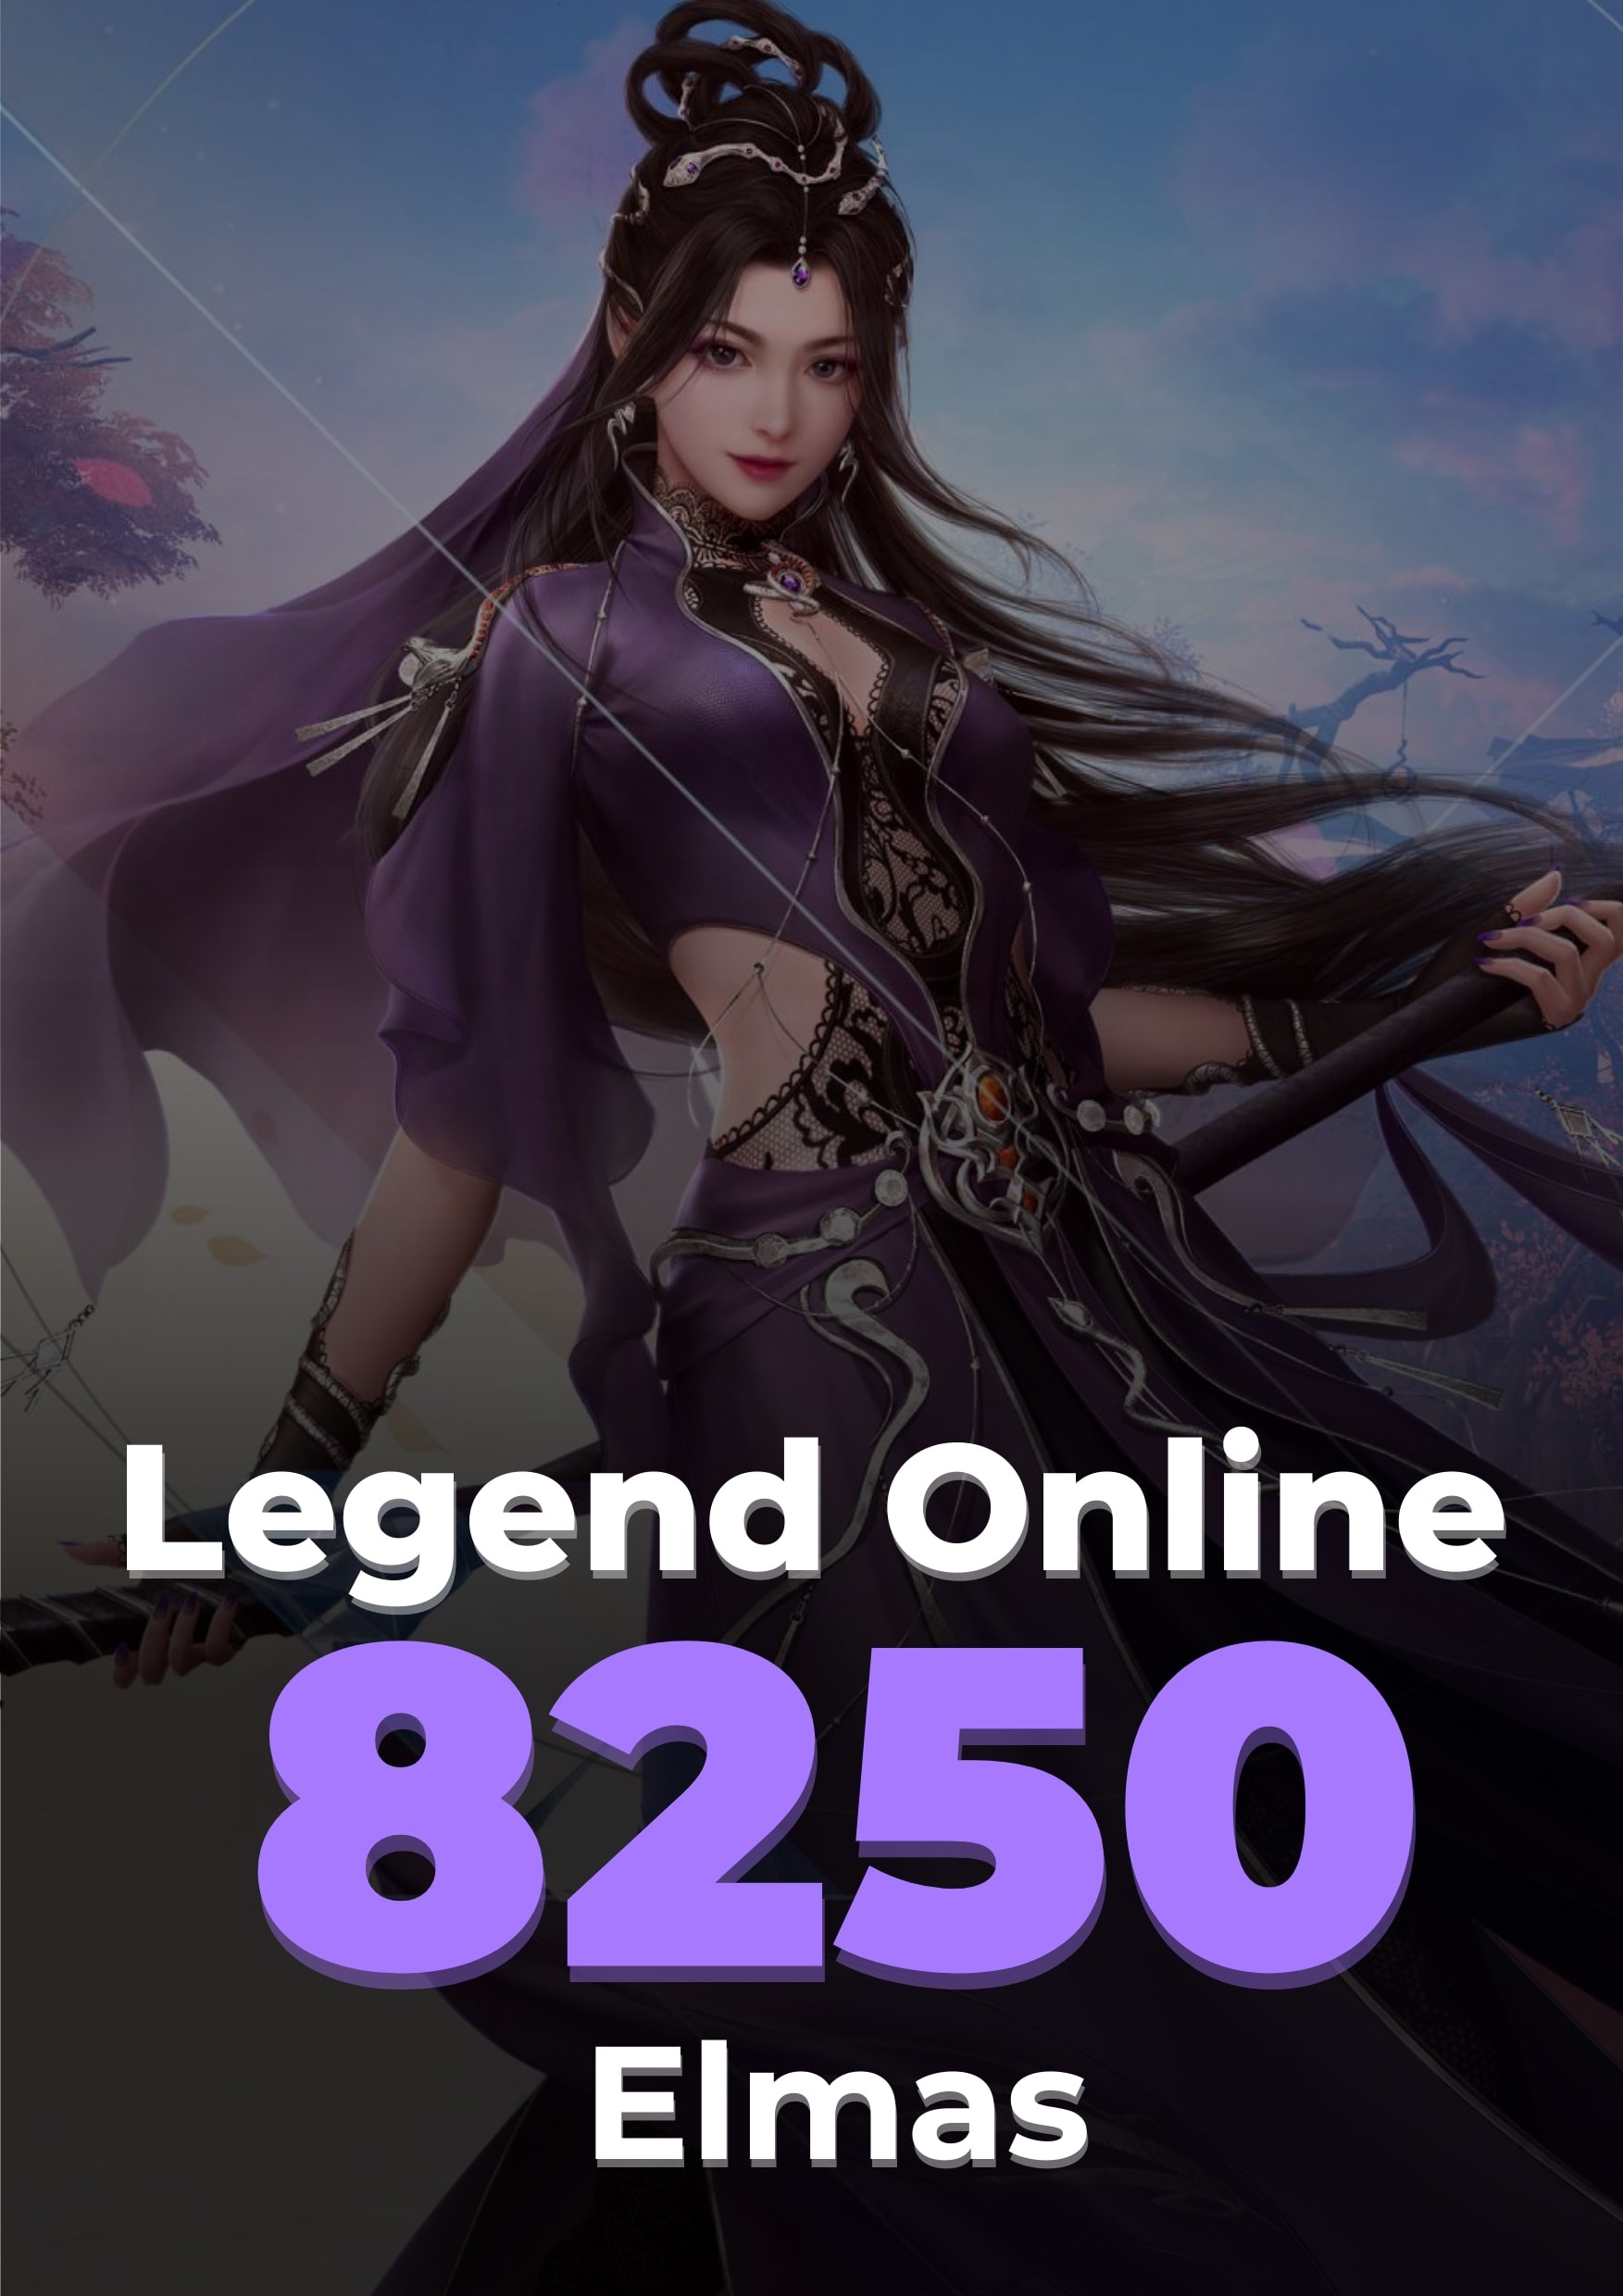 Legend Online 7500 + 750 Elmas